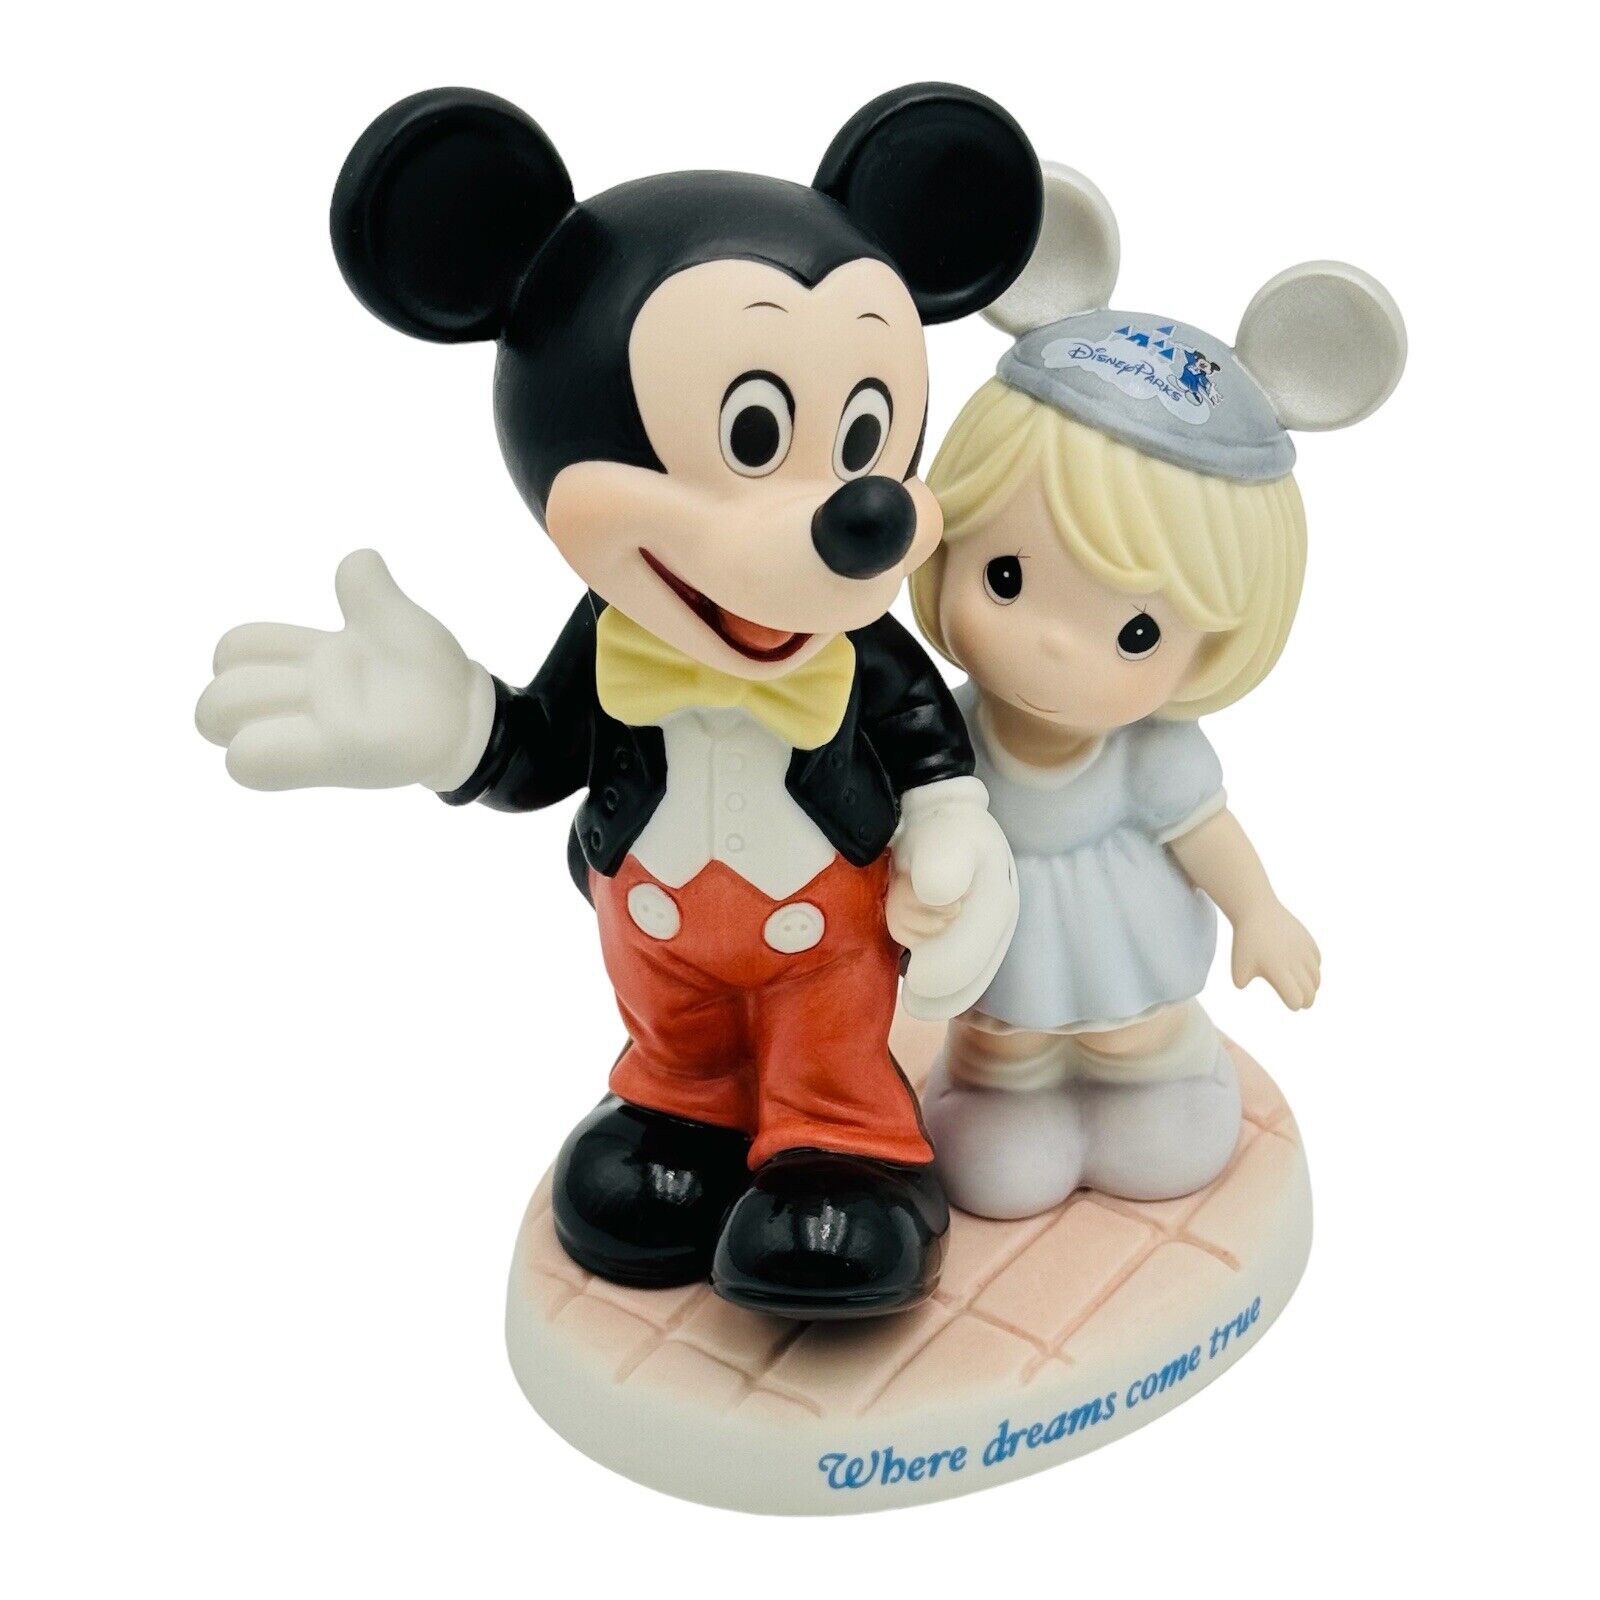 Disney Precious Moments Where Dreams Come True Figurine Mickey Mouse RARE